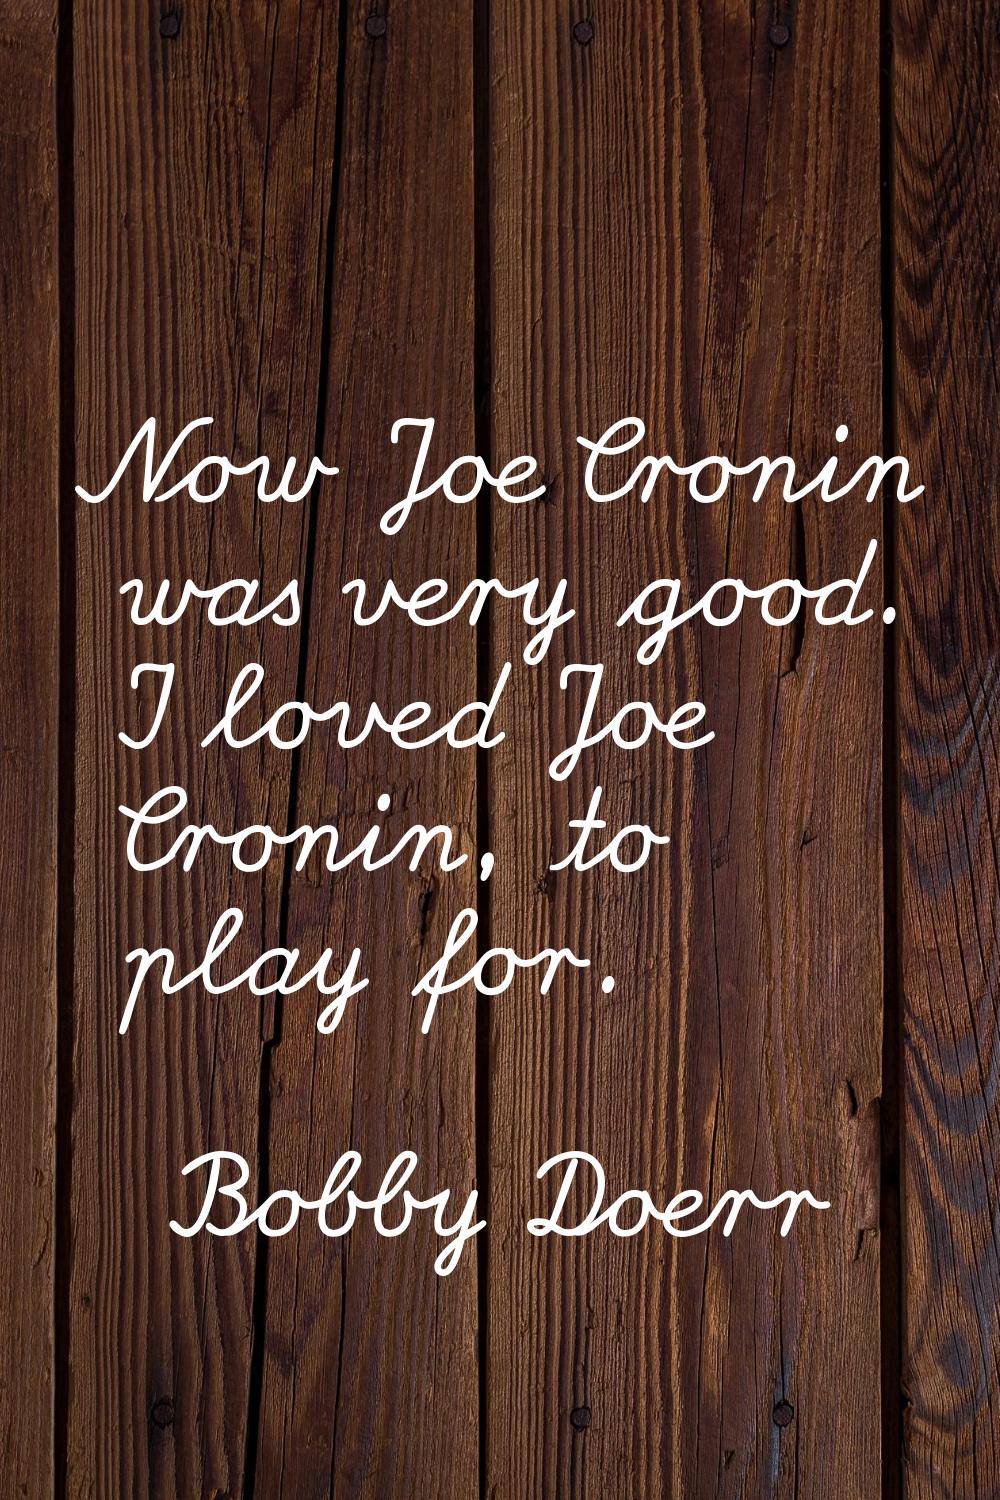 Now Joe Cronin was very good. I loved Joe Cronin, to play for.